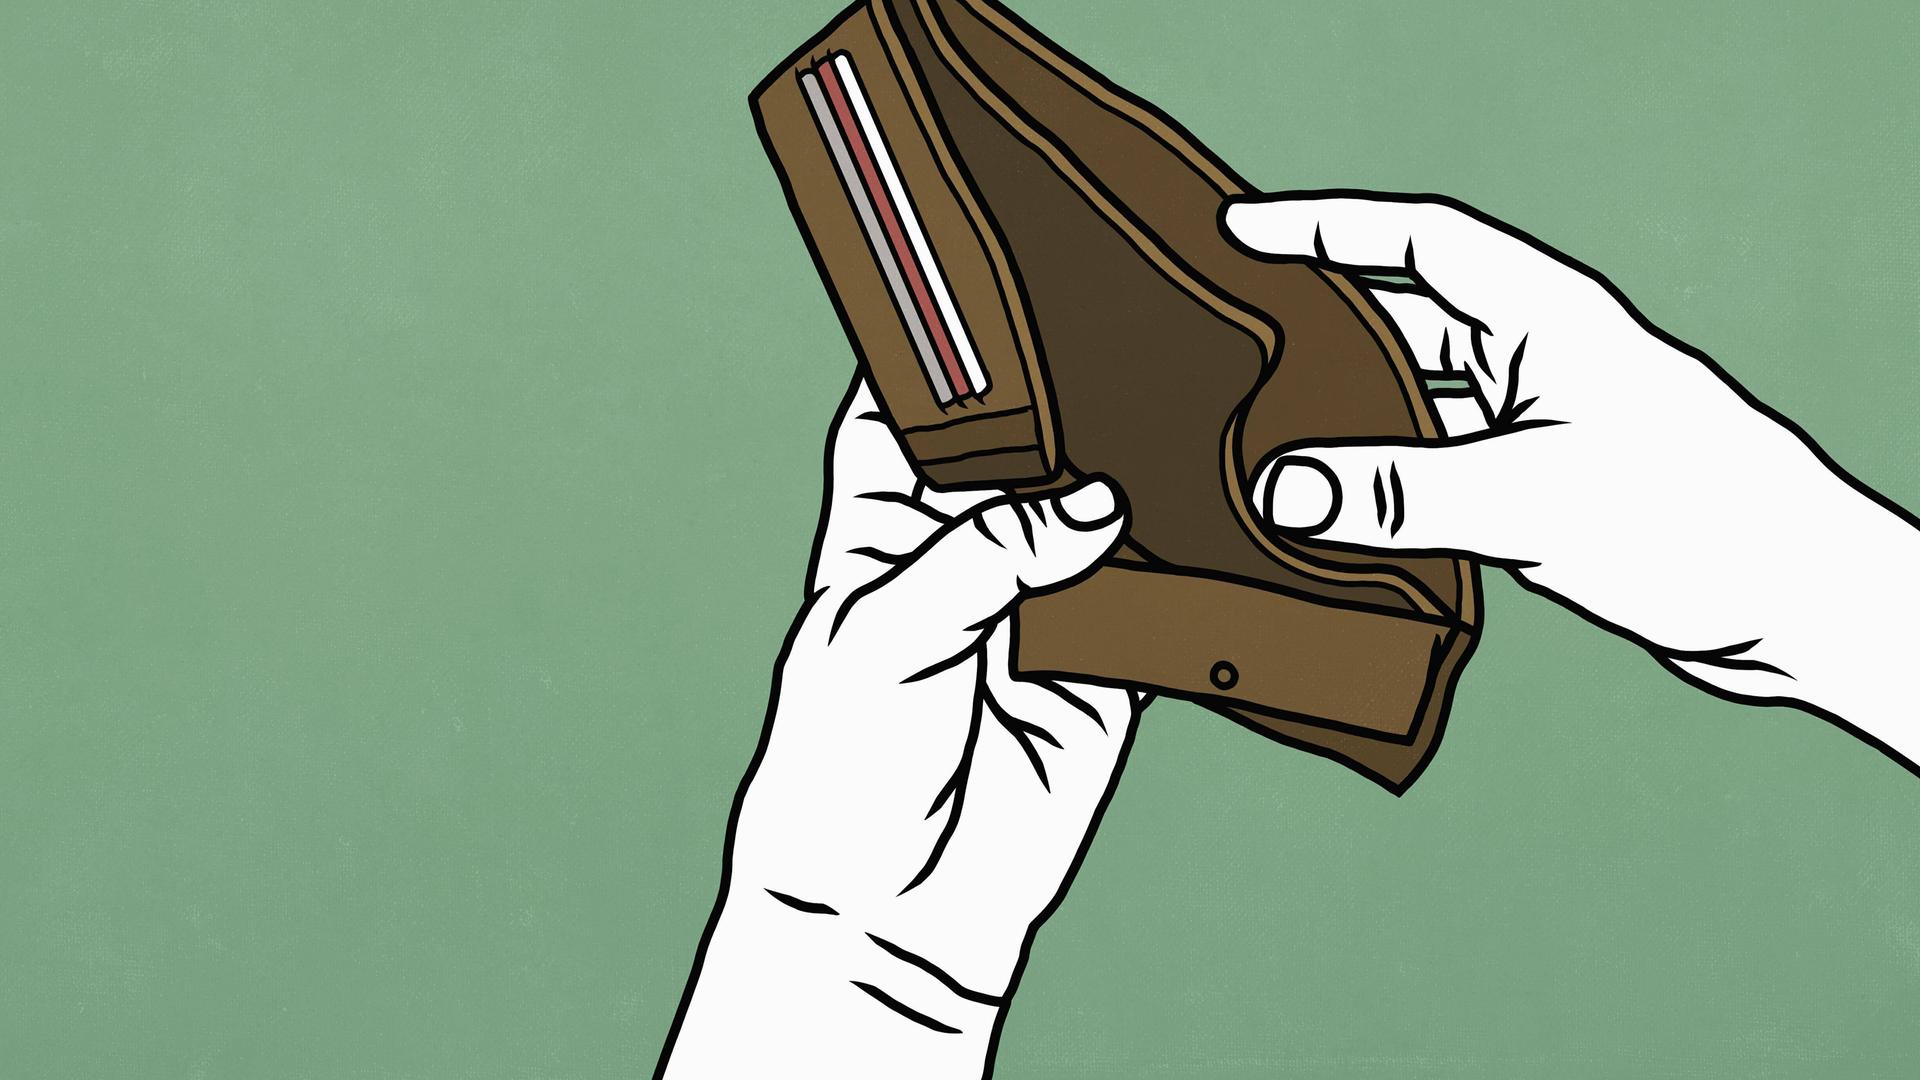 Illustration von Händen, die eine leere Geldbörse halten.